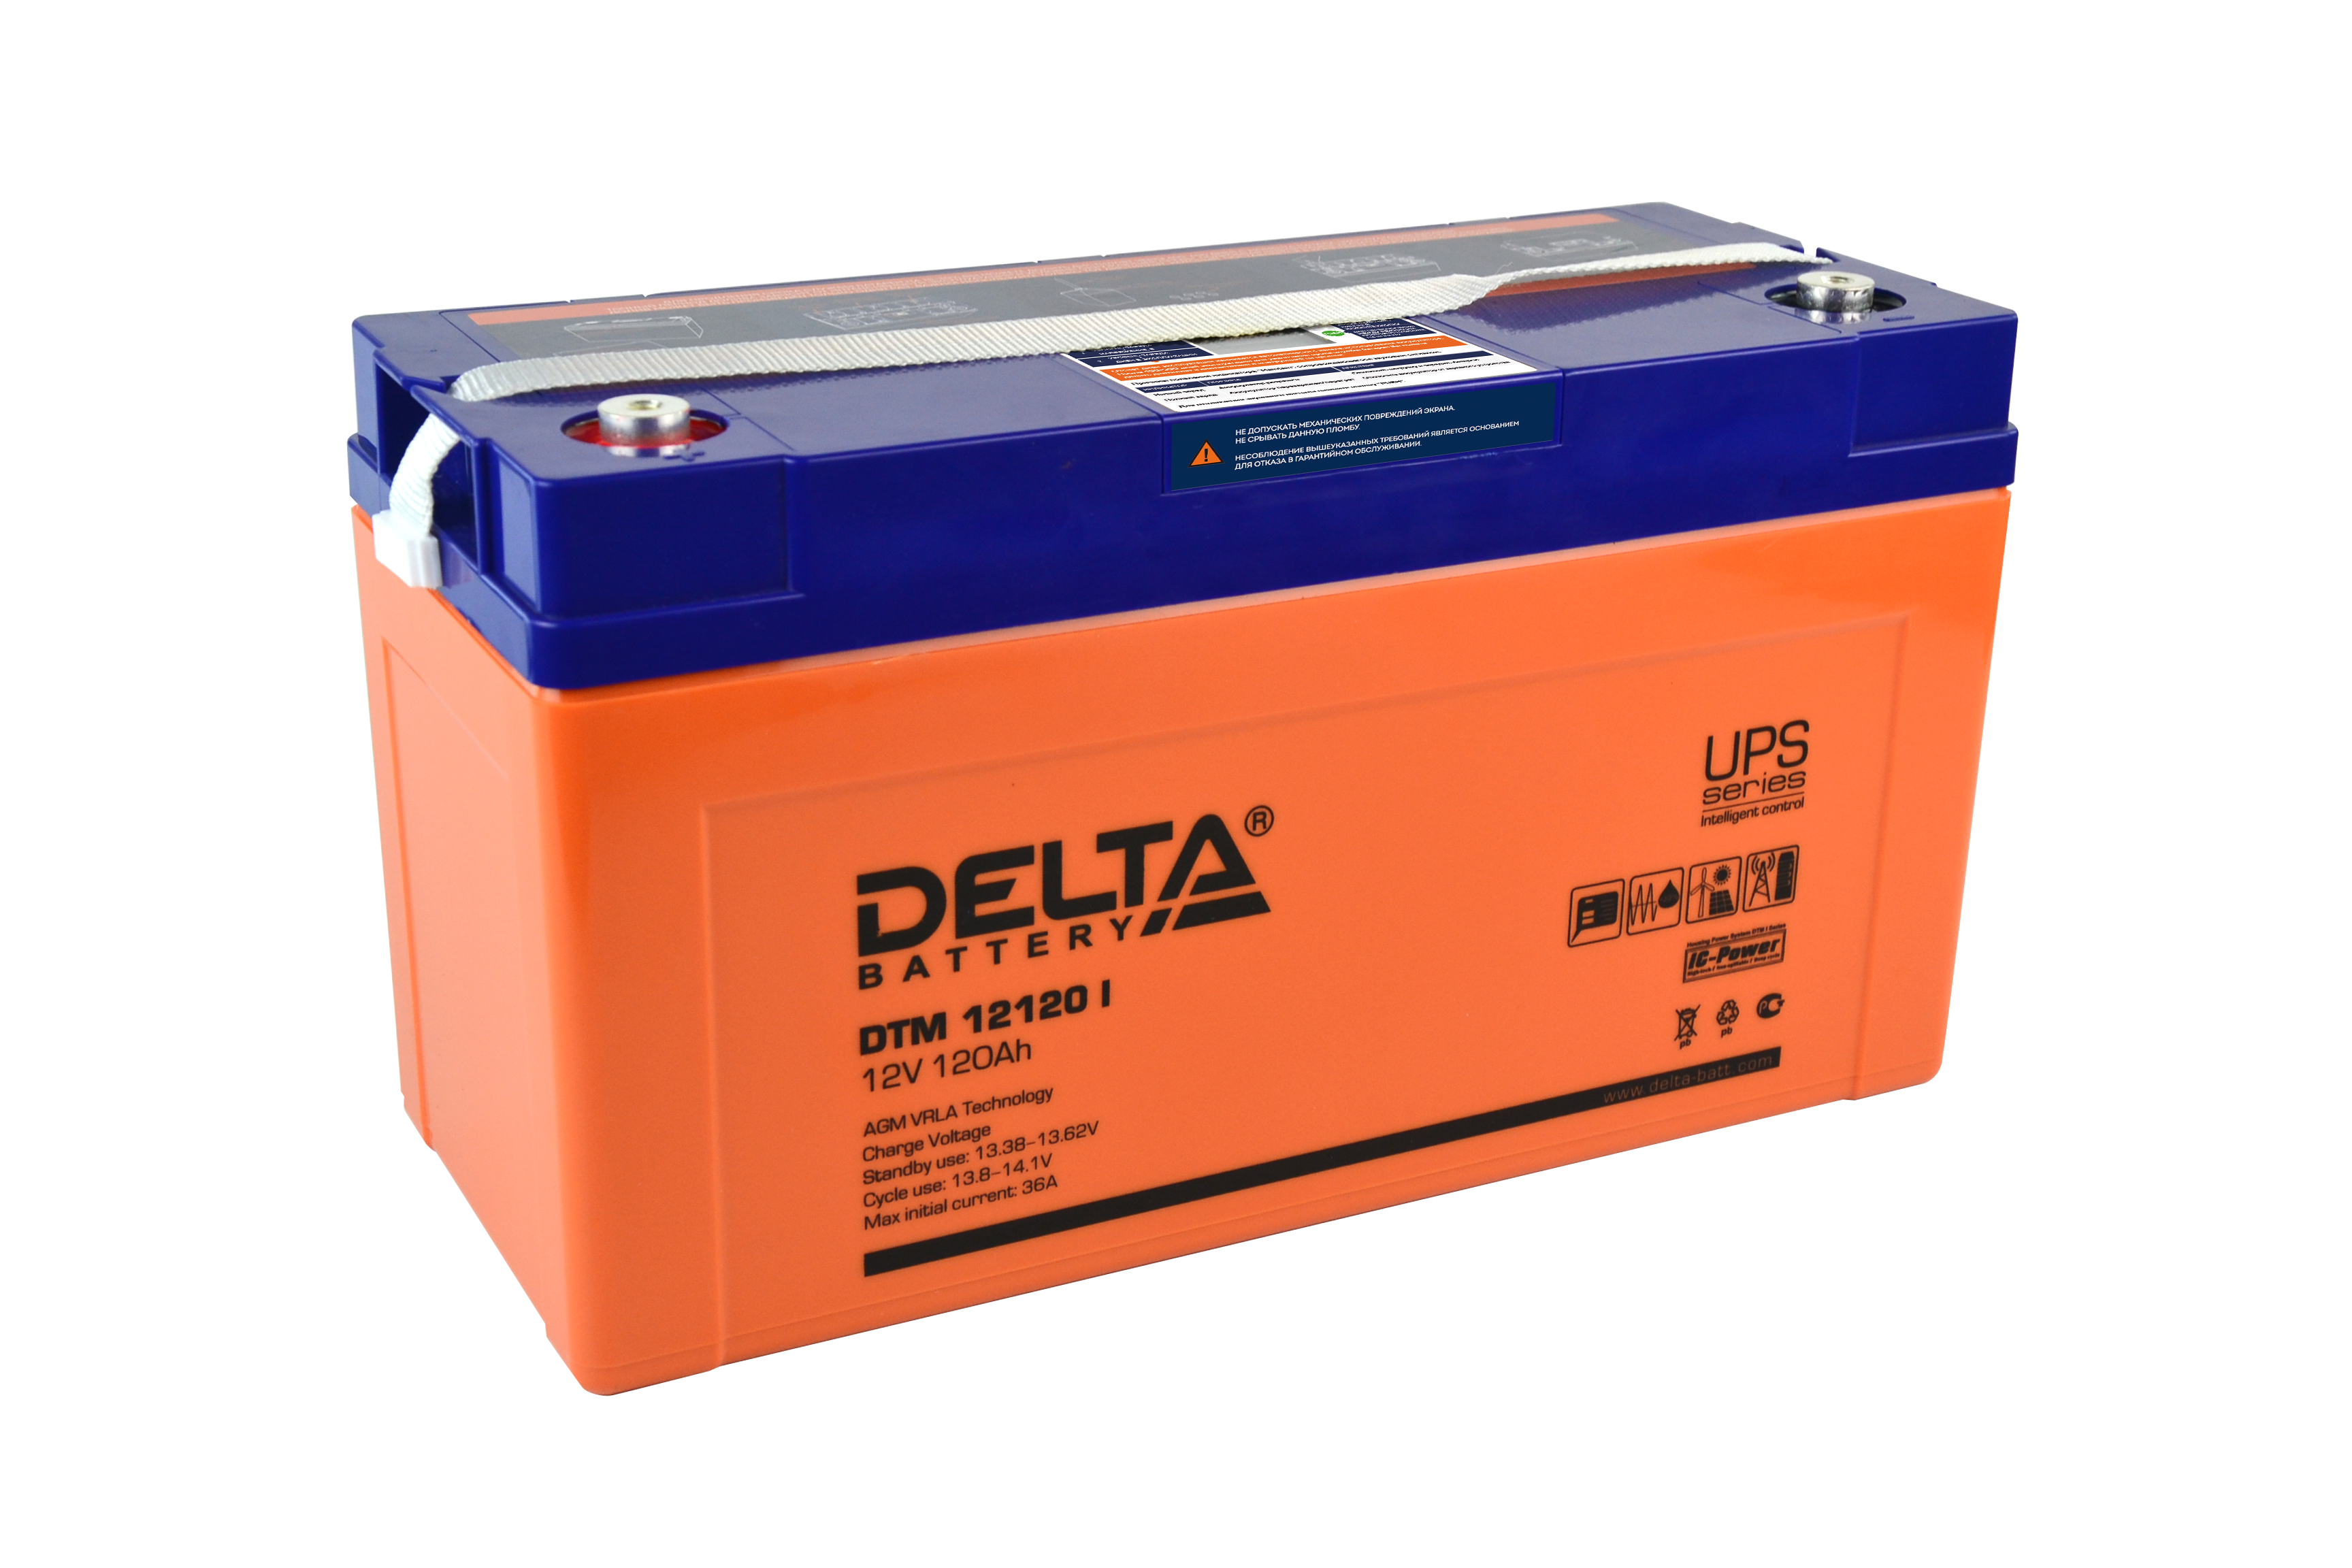 Voltage 12v. Батарея Delta DTM 12120 I. Аккумуляторная батарея Delta DTM 12120 L. АКБ Delta 12v. Delta DTM 12120 I (12в/120ач).